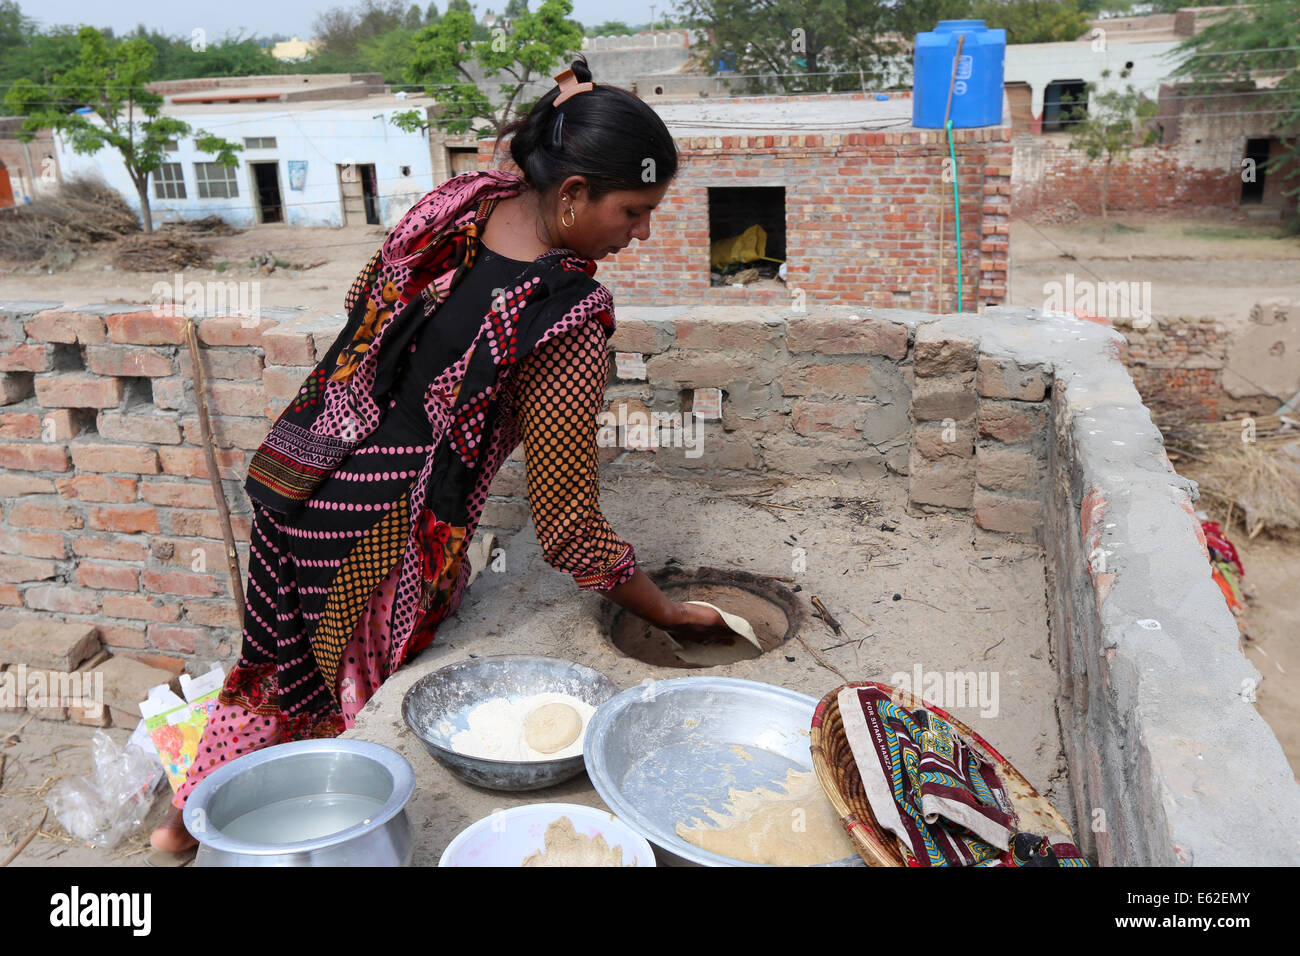 Frau in traditioneller Kleidung Roti Brot (bekannt als Chapati) in einem Lehmofen backen. Khushpur Dorf, Provinz Punjab, Pakistan Stockfoto